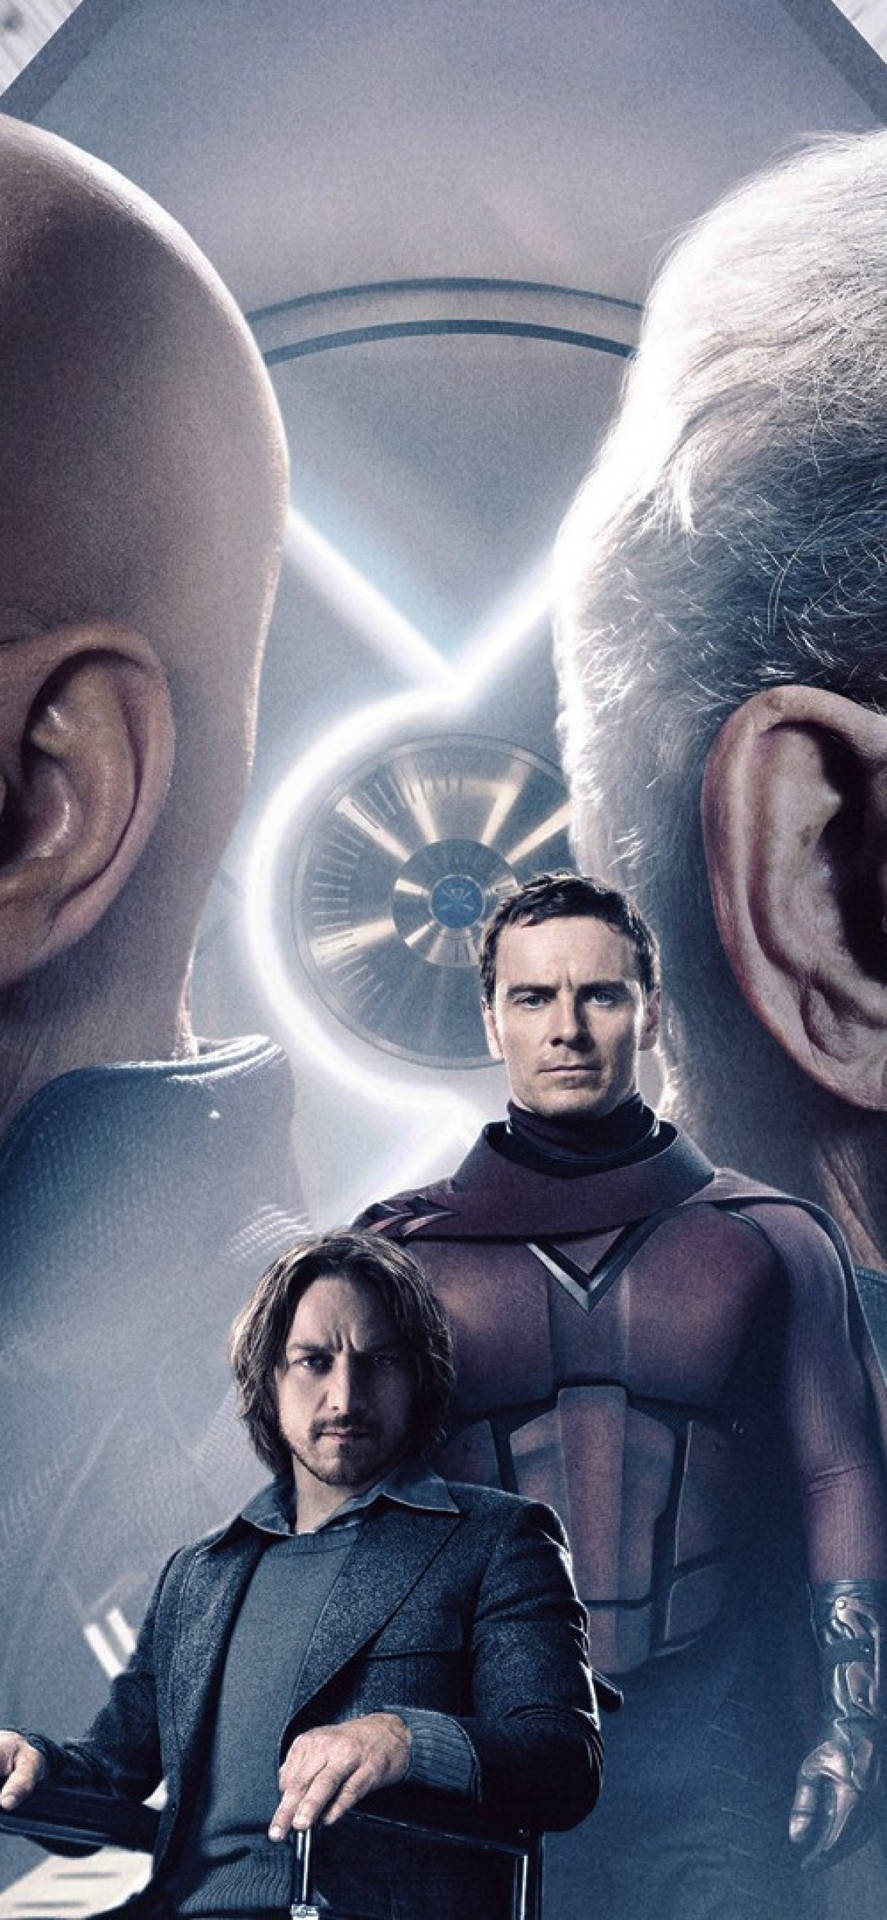 Magneto and Professor X intense showdown Wallpaper